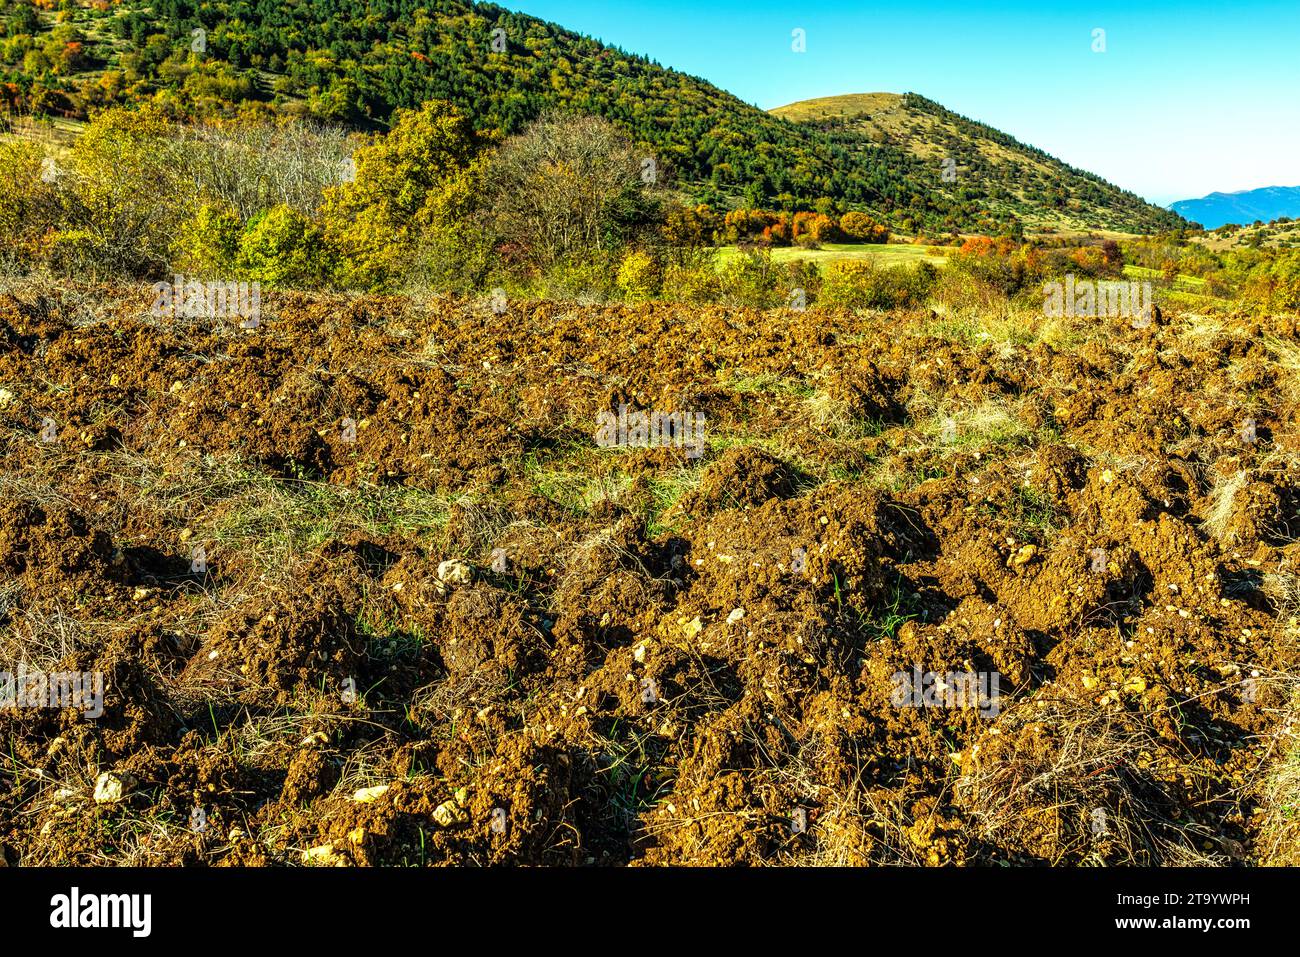 Das Aufbrechen und Pflügen landwirtschaftlicher Flächen in den Bergen zur Vorbereitung auf den Winter. Cansano, Provinz L'Aquila, Abruzzen, Italien Stockfoto